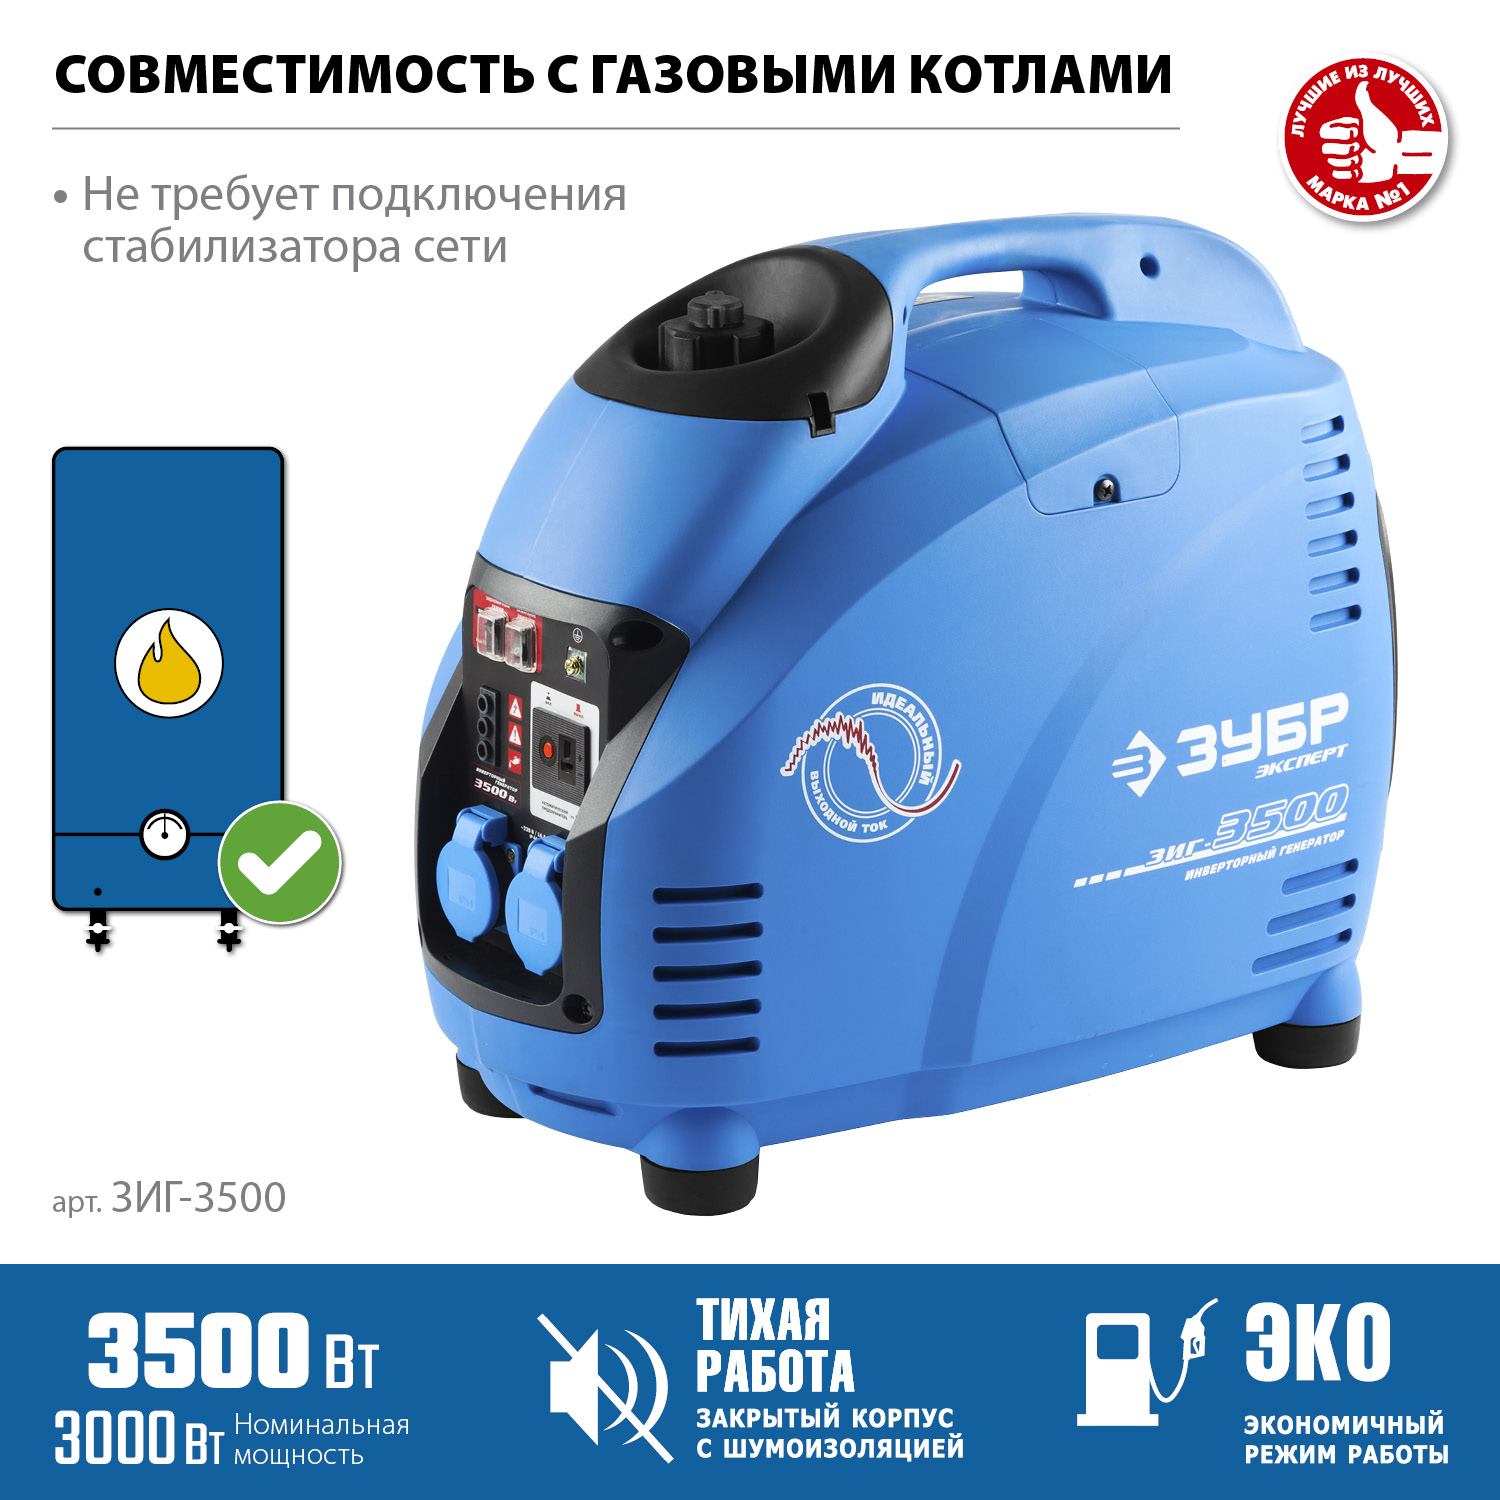 ЗУБР 3500 Вт, инверторный генератор, Профессионал (ЗИГ-3500)